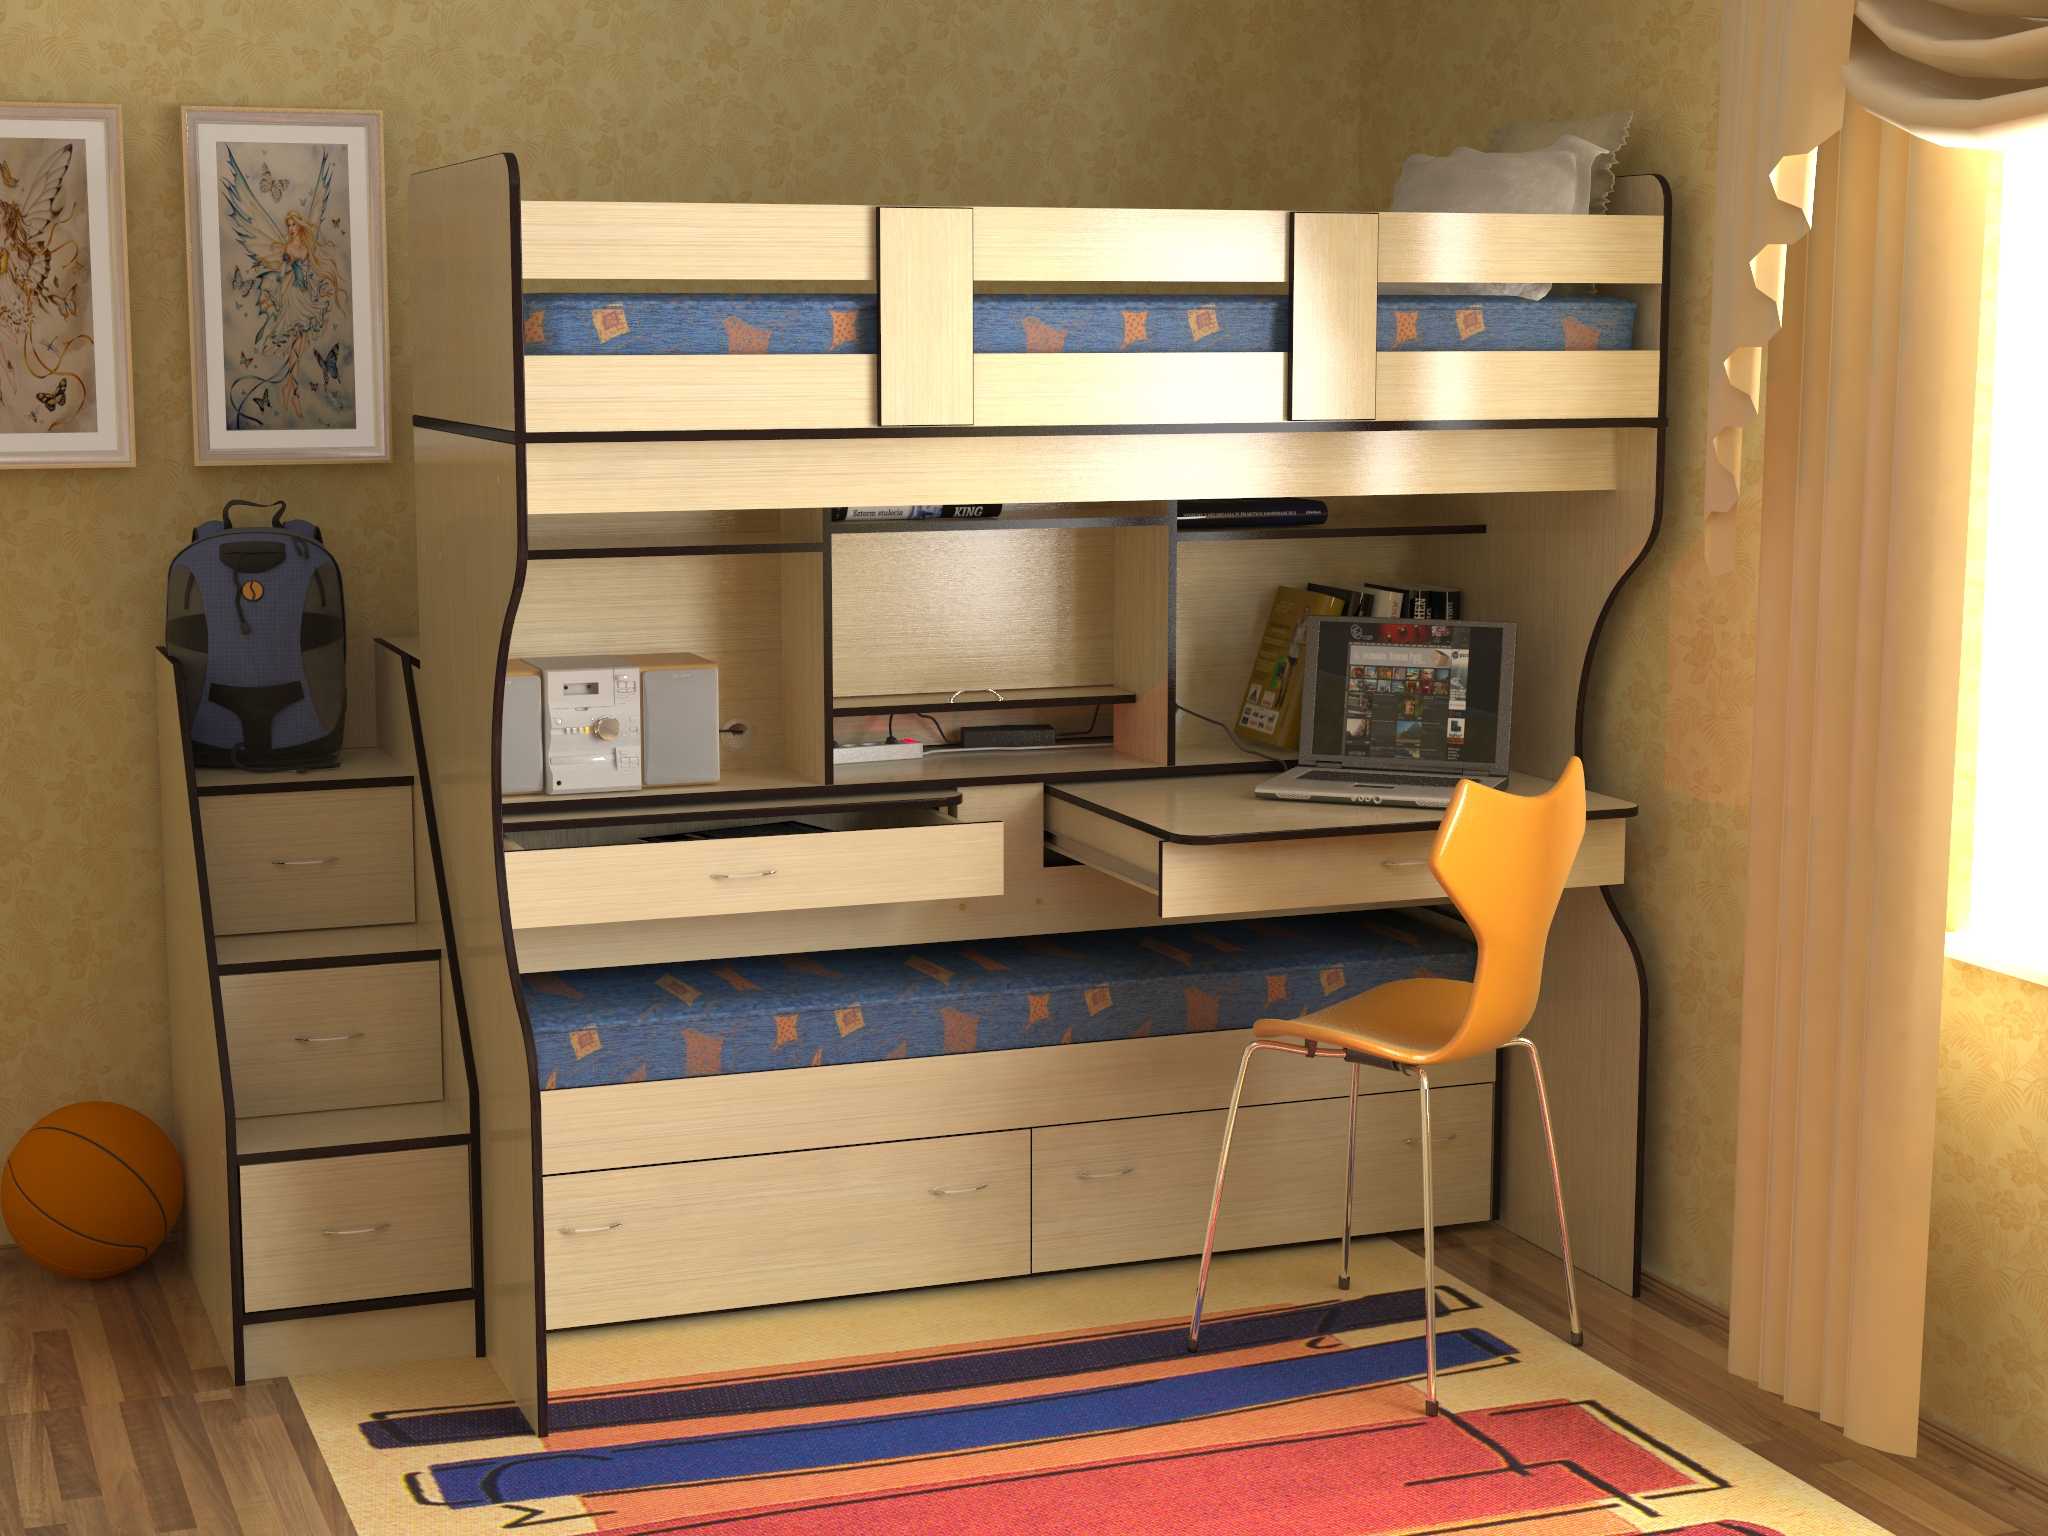 Двухъярусная кровать для детей, преимущества, лучшие модели, материалы